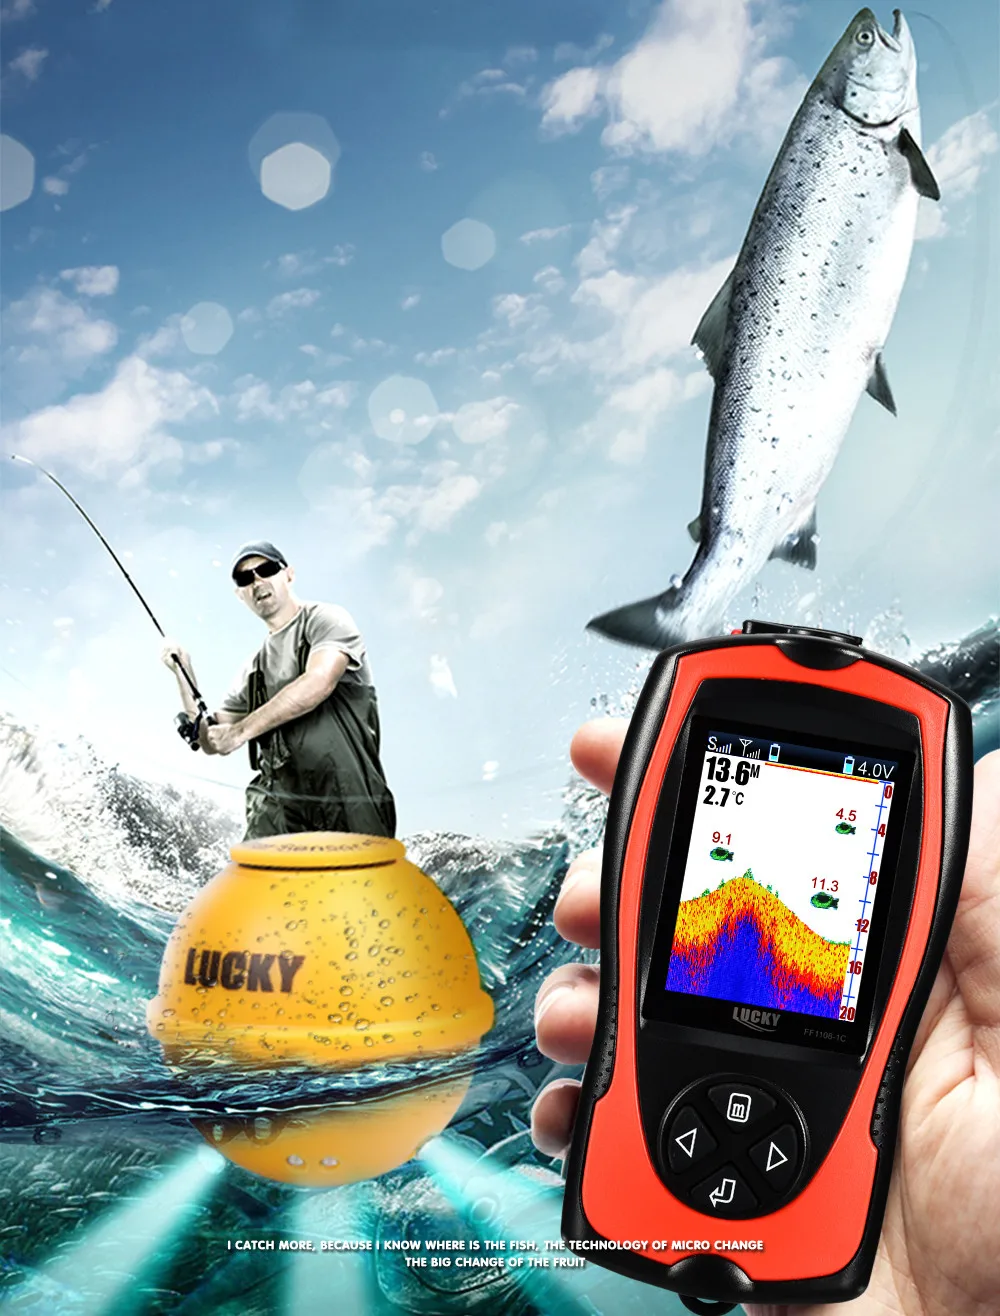 Лаки sonar сенсор рыболокатор FF1108-1CWLA sonda de pesca управление беспроводной дистанционный гидролокатор сенсор 45 м глубина воды ЖК-дисплей рыболокатор s